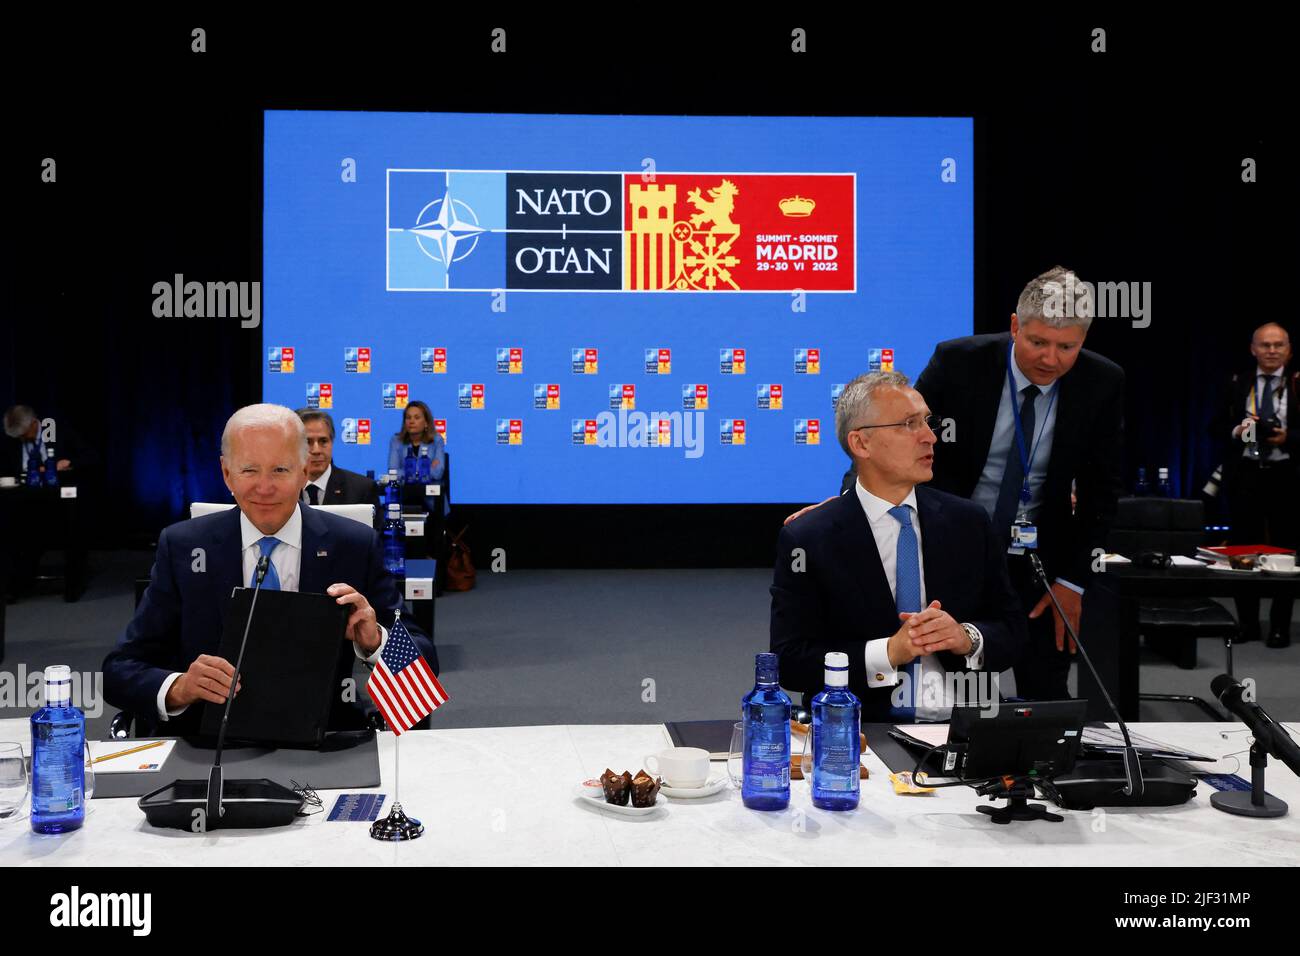 NATO-Generalsekretär Jens Stoltenberg und US-Präsident Joe Biden nehmen am 29. Juni 2022 an einem NATO-Gipfel in Madrid, Spanien, Teil. REUTERS/Yves Herman Stockfoto